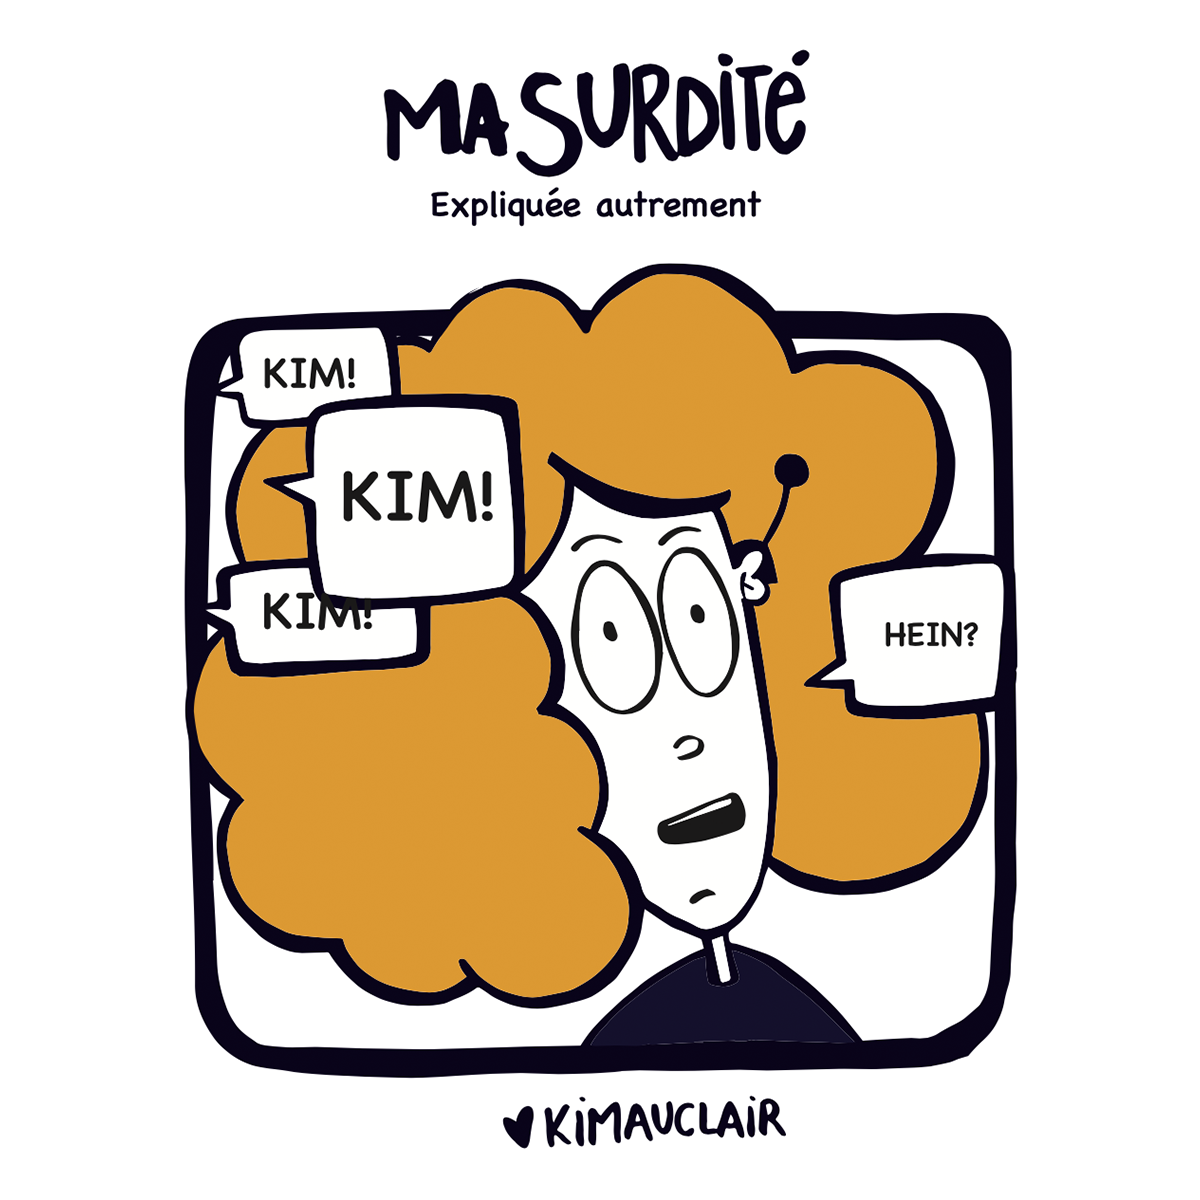 Couverture de "Ma surdité expliquée autrement", où on voit dessiné Kim Auclair qui entend mal des gens qui l'appellent.